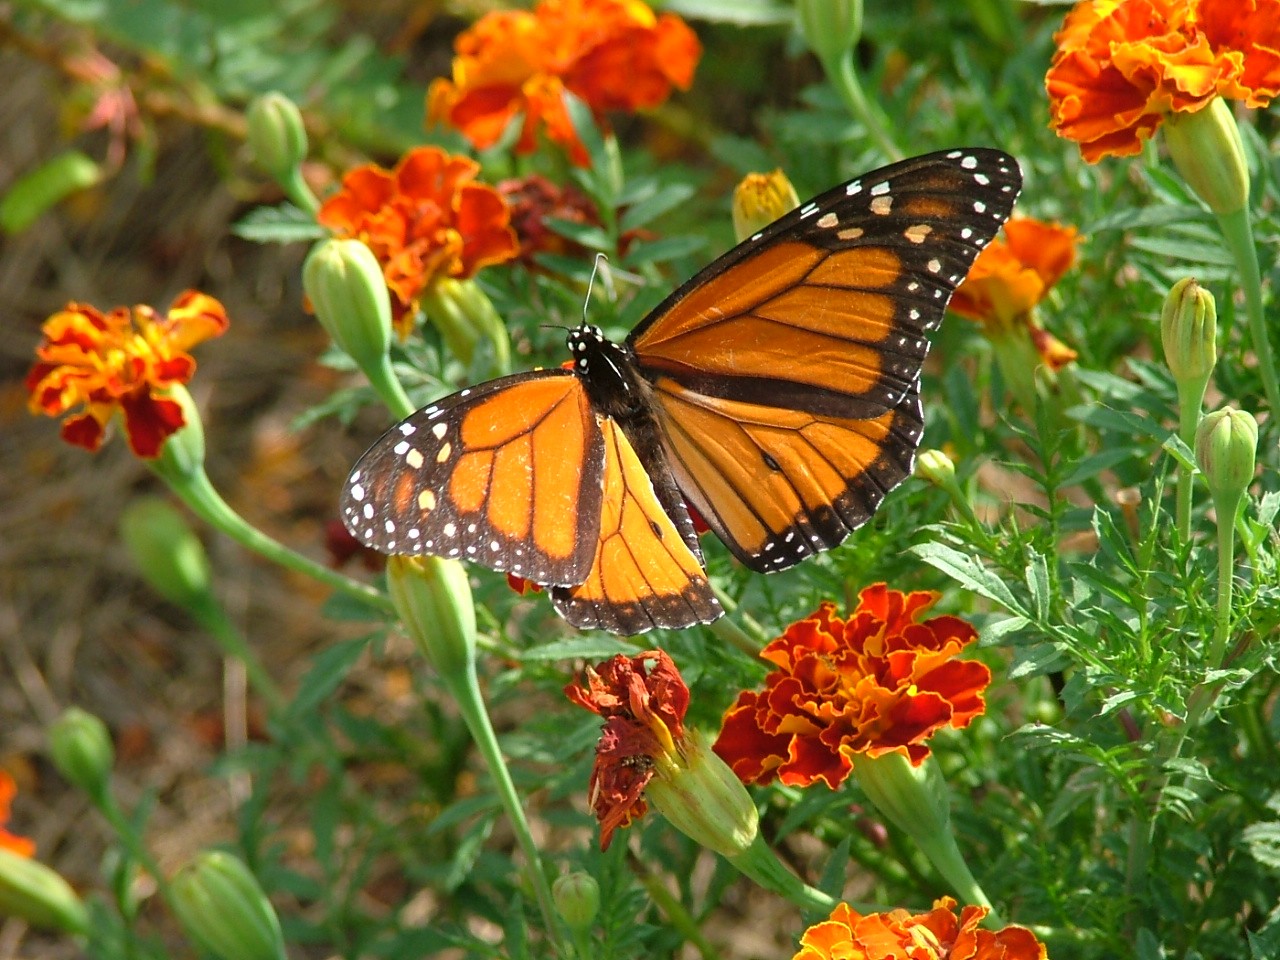 A monarch butterfly on orange flowers.